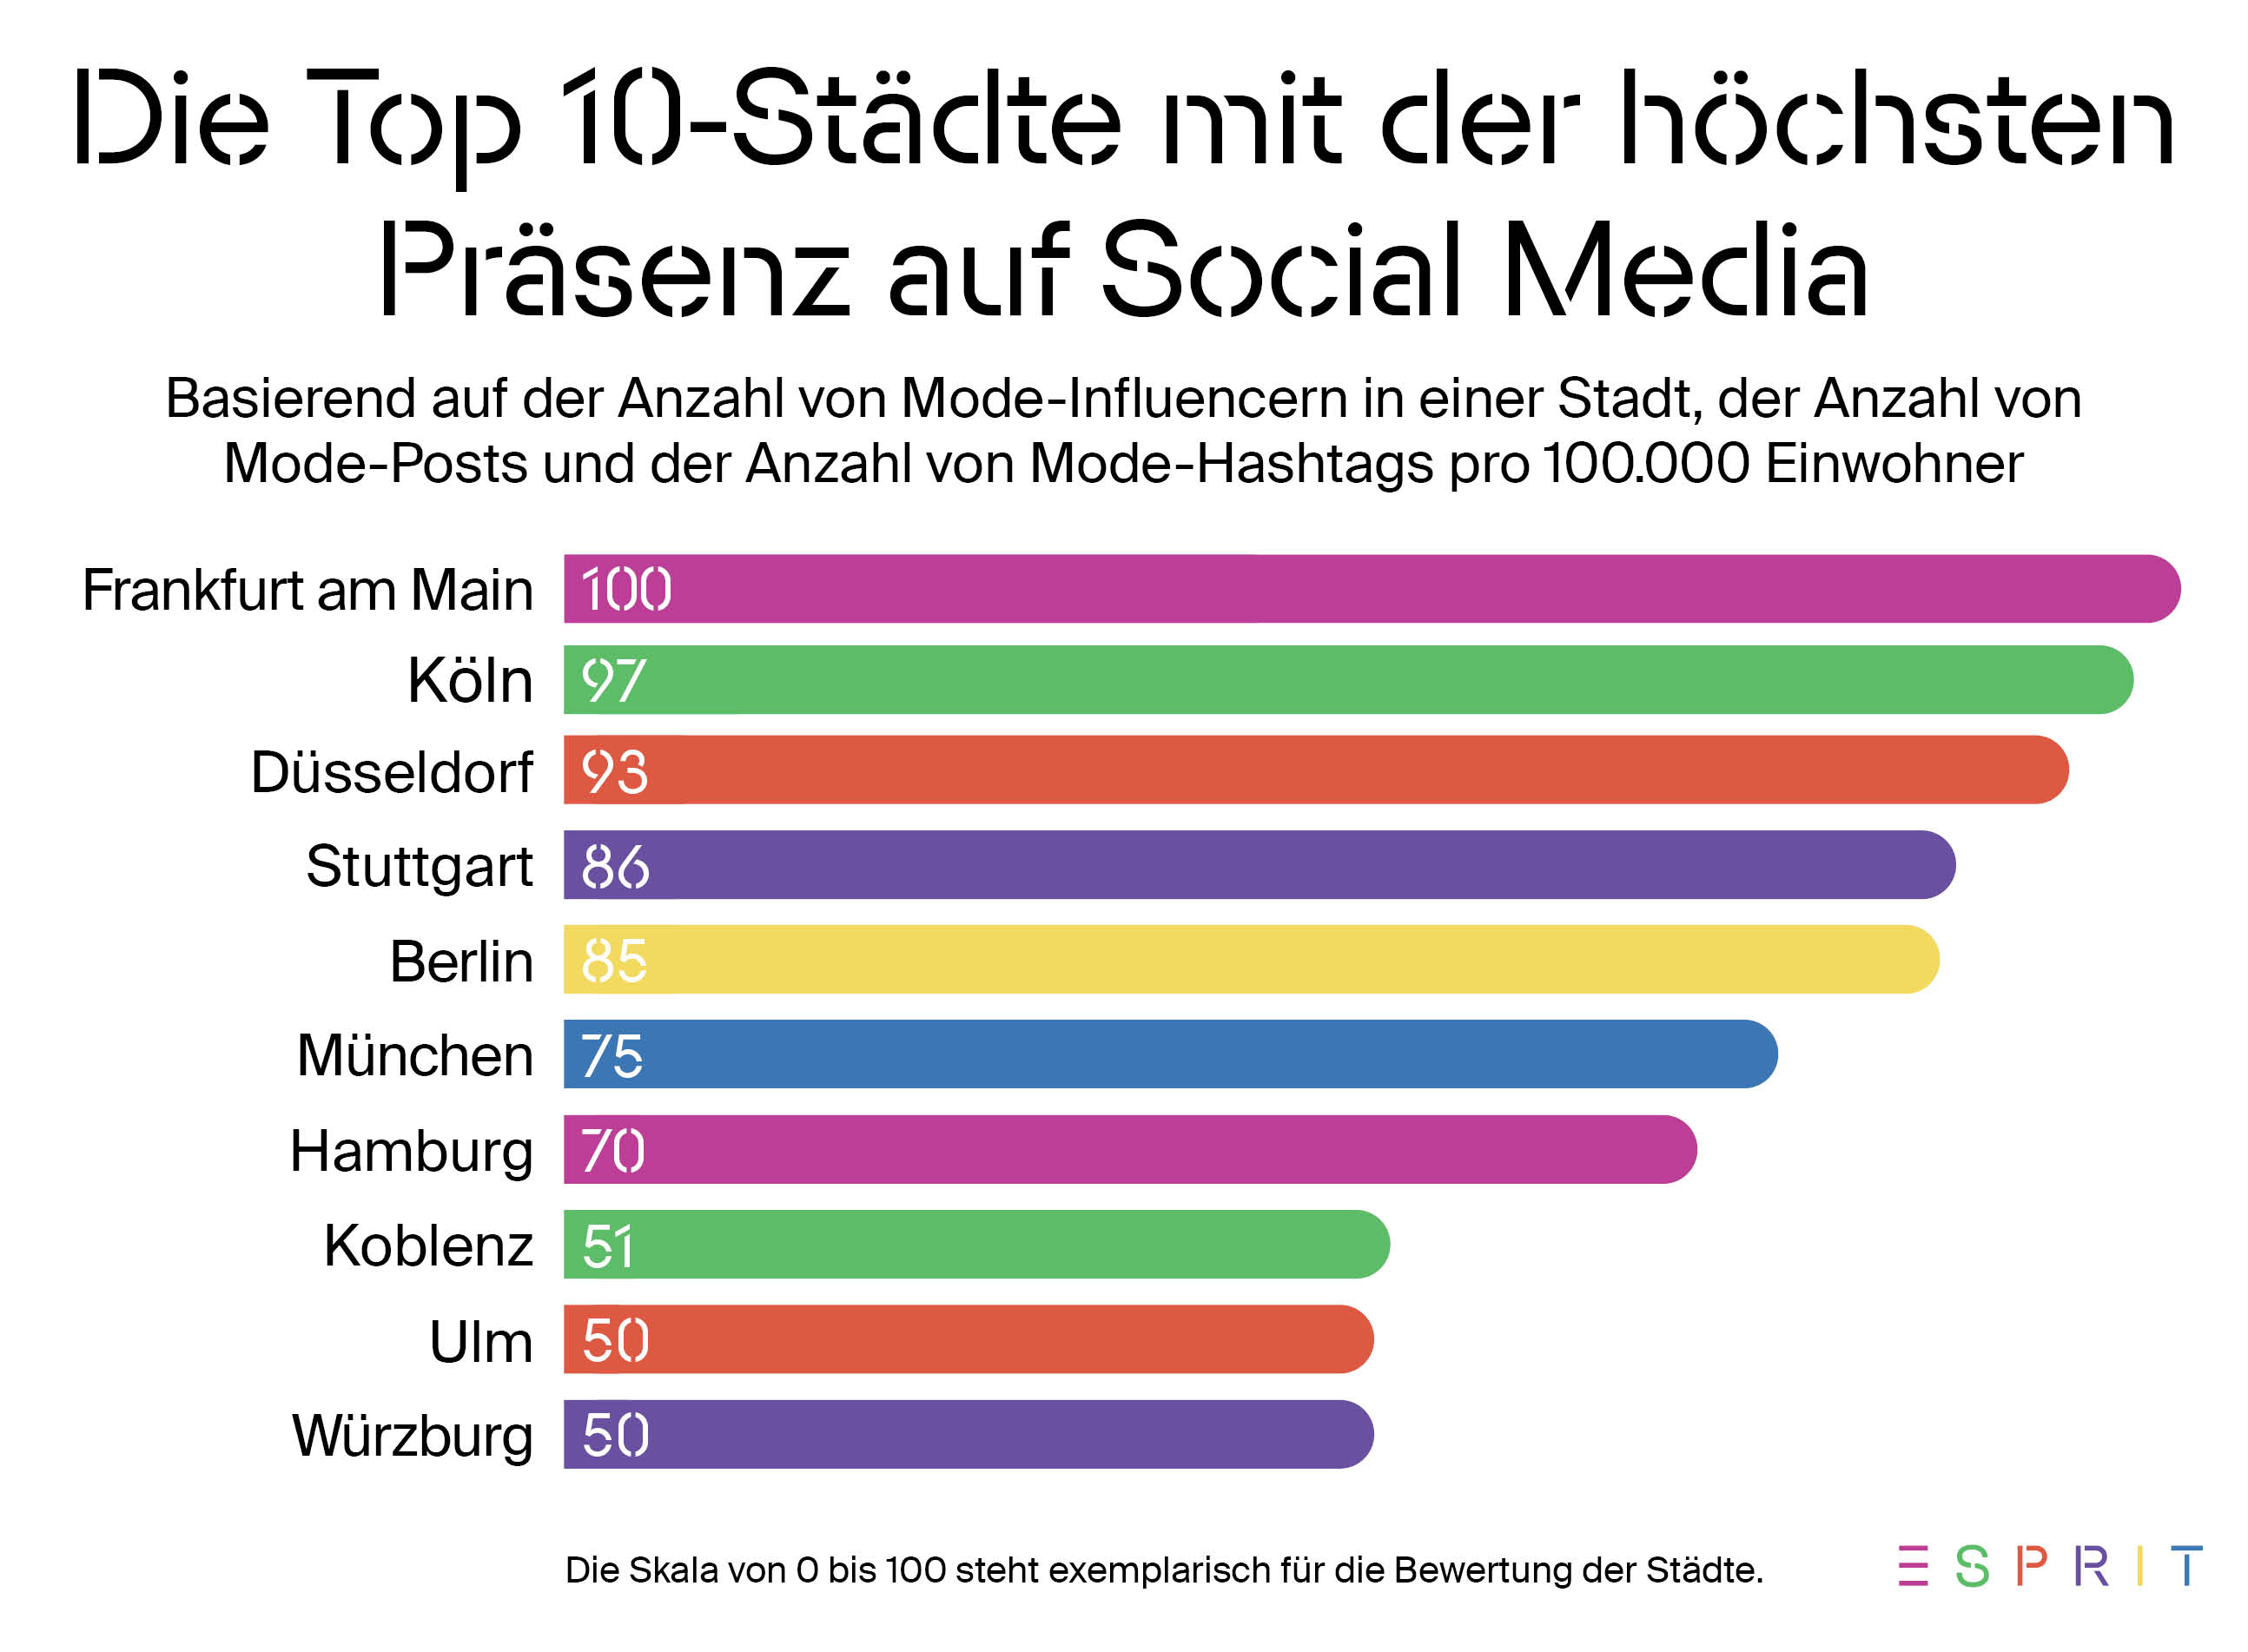 Frankfurt am Main ist auf Platz 1 der Top-10 Mode-Städte mit der größten Präsenz auf Social Media in Deutschland.